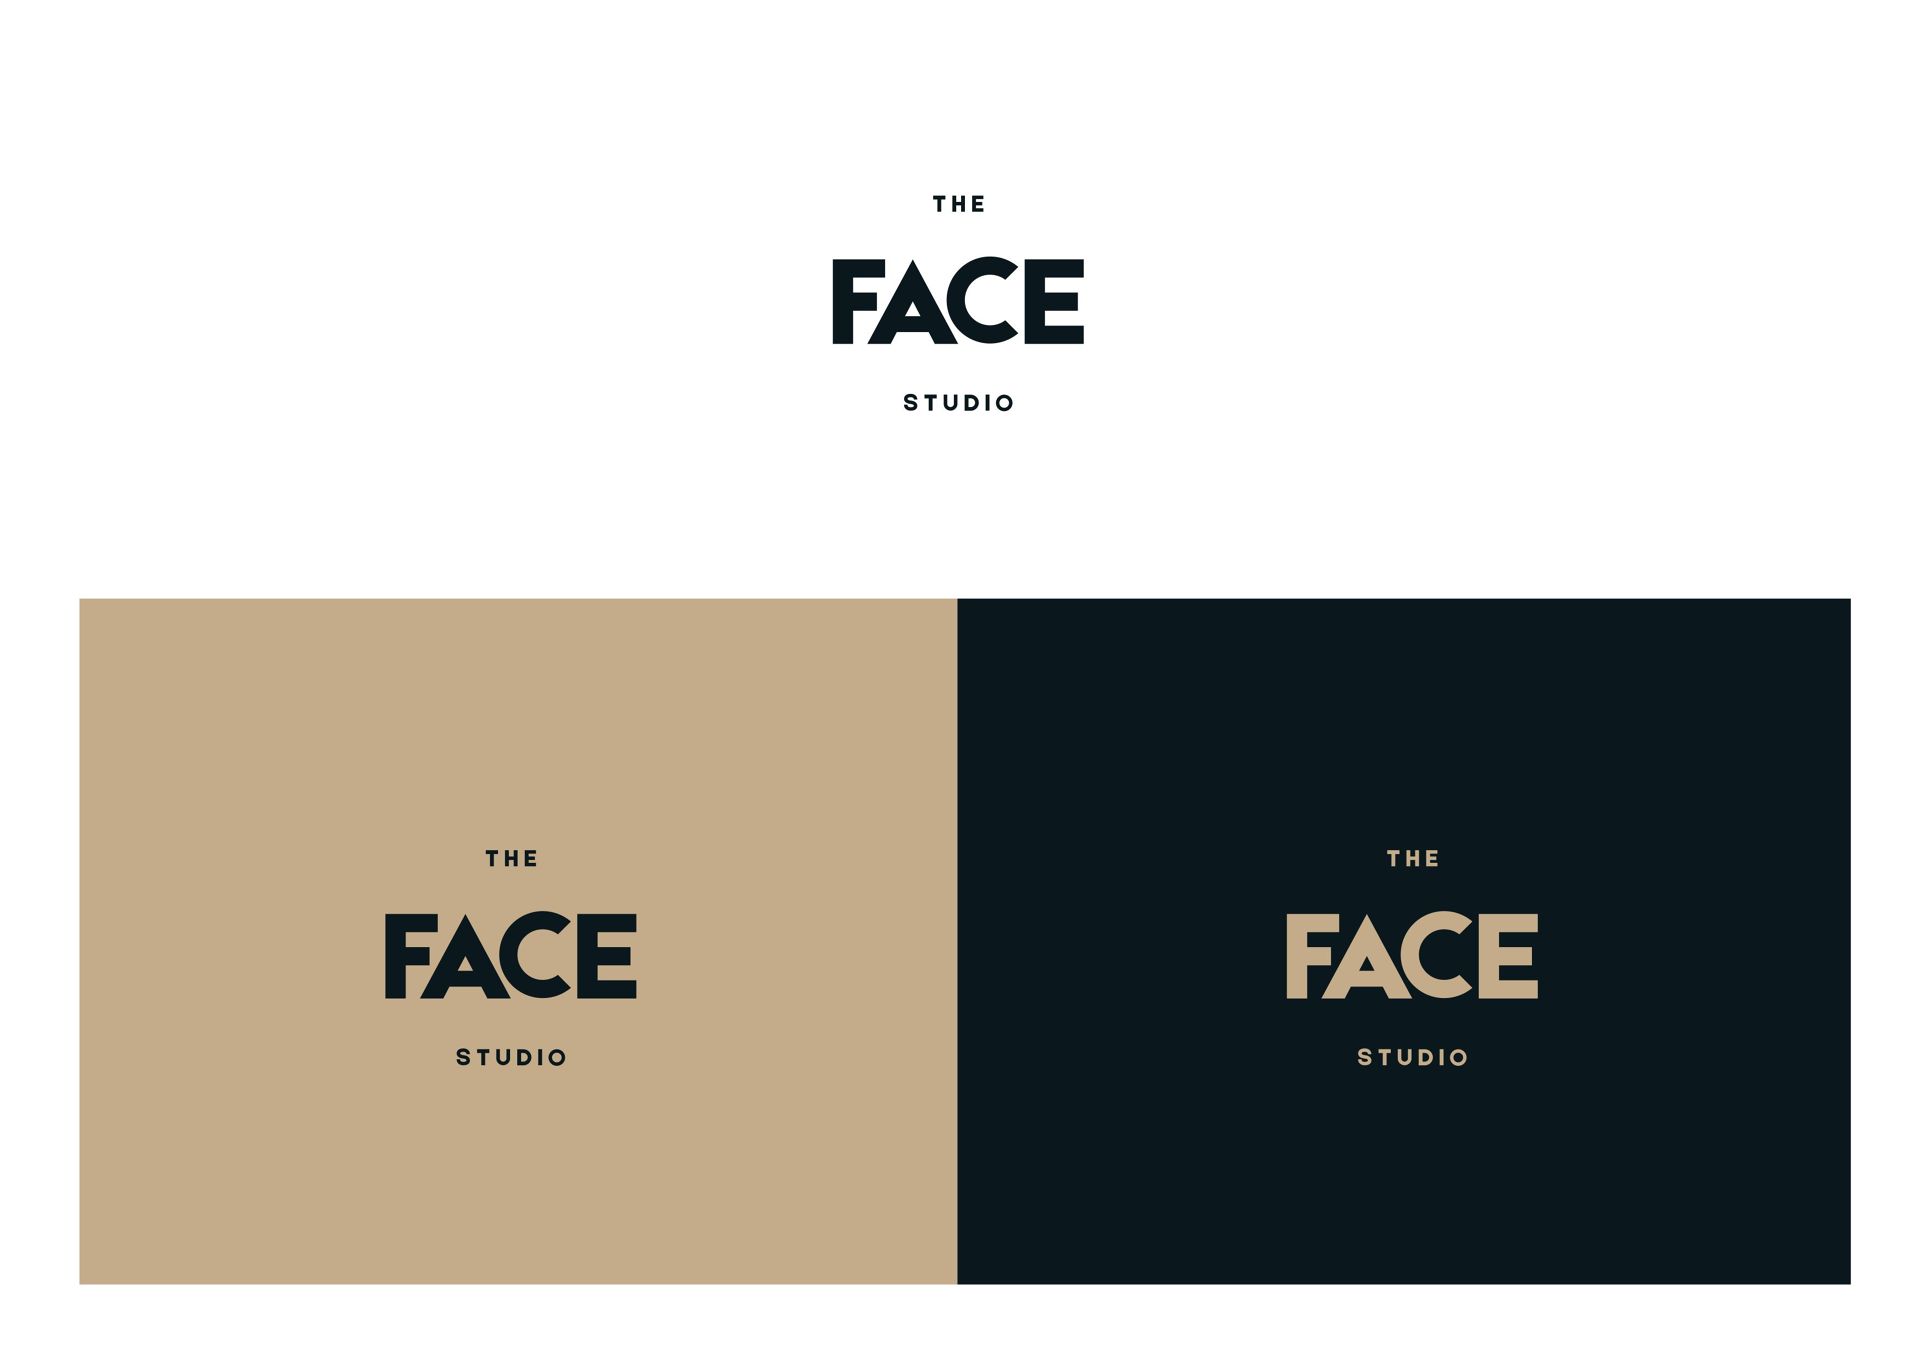 Разработка фирменного стиля The Face studio